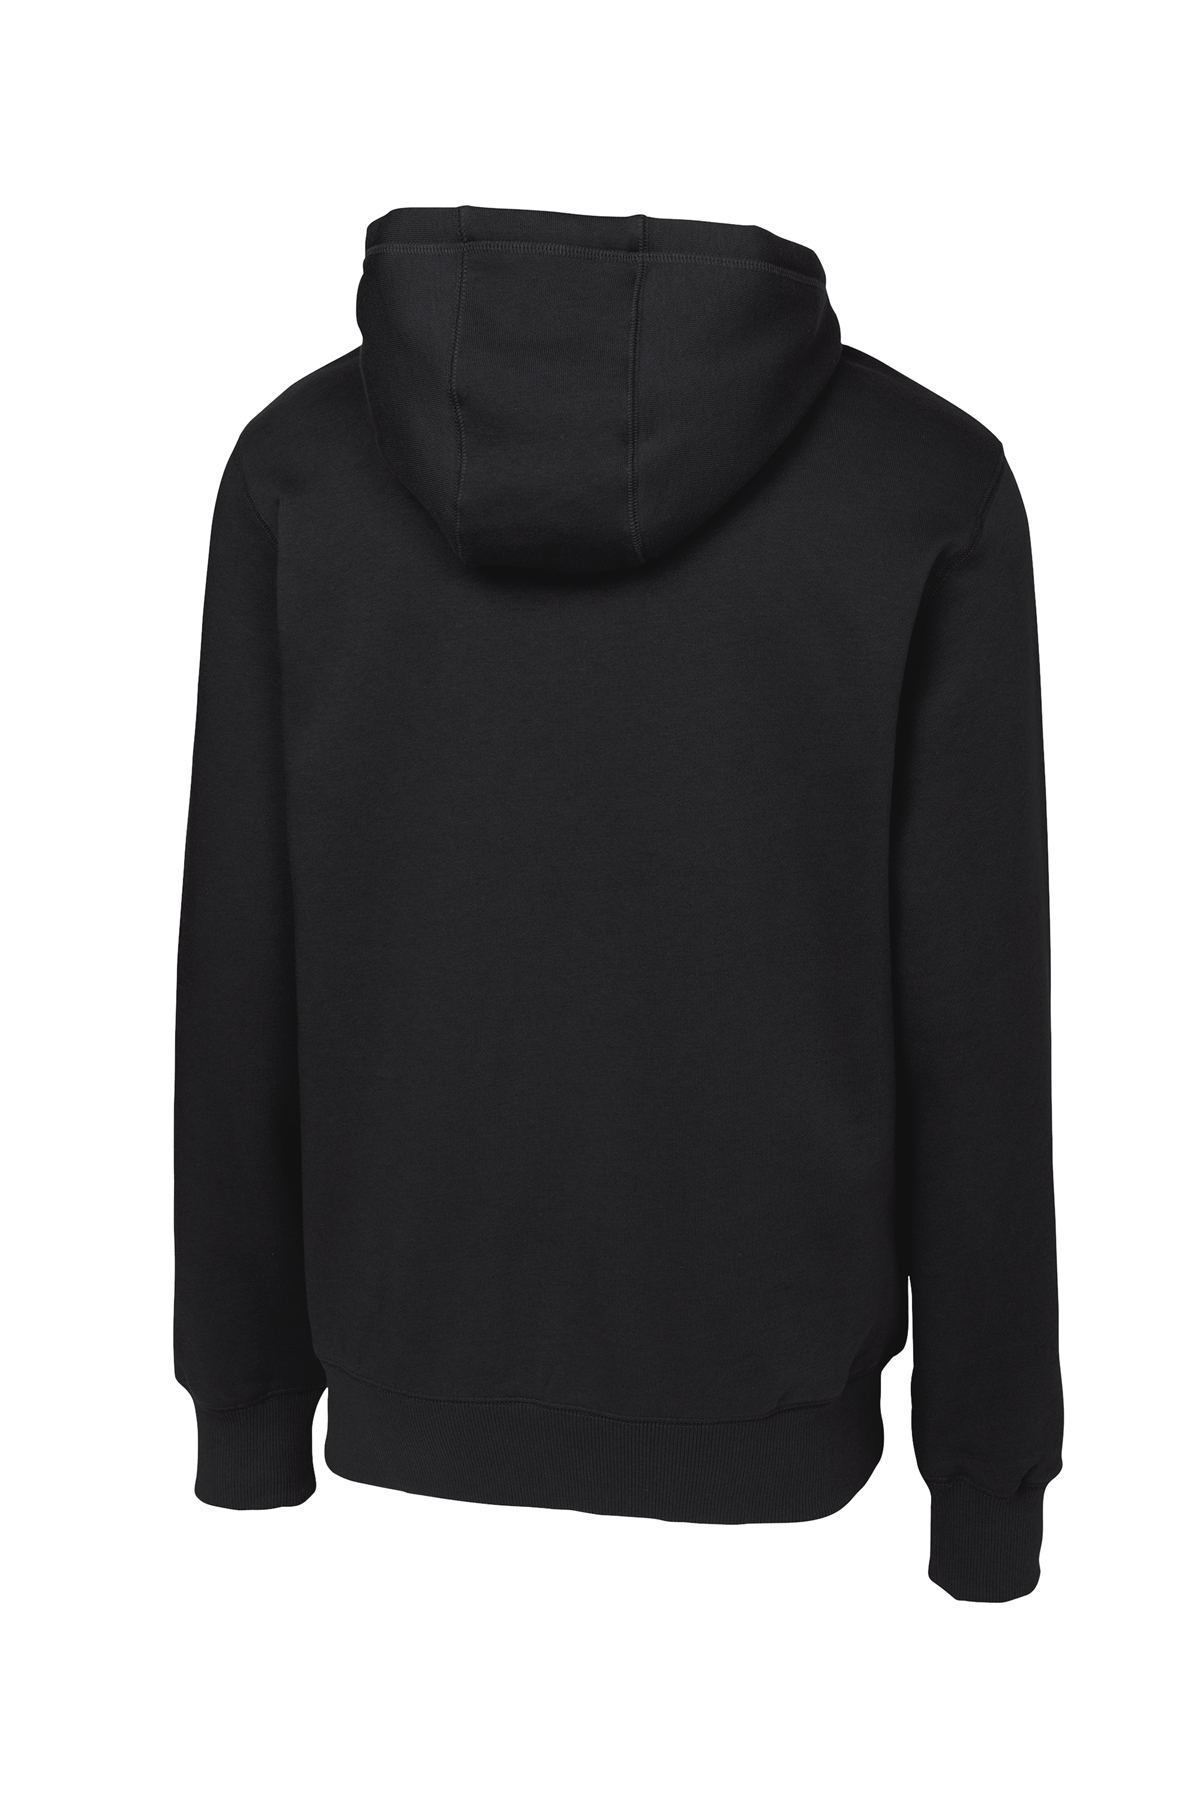 CozyTec Full Zip Hoodie - Porpoise  Full zip hoodie, Zip hoodie, Hoodies